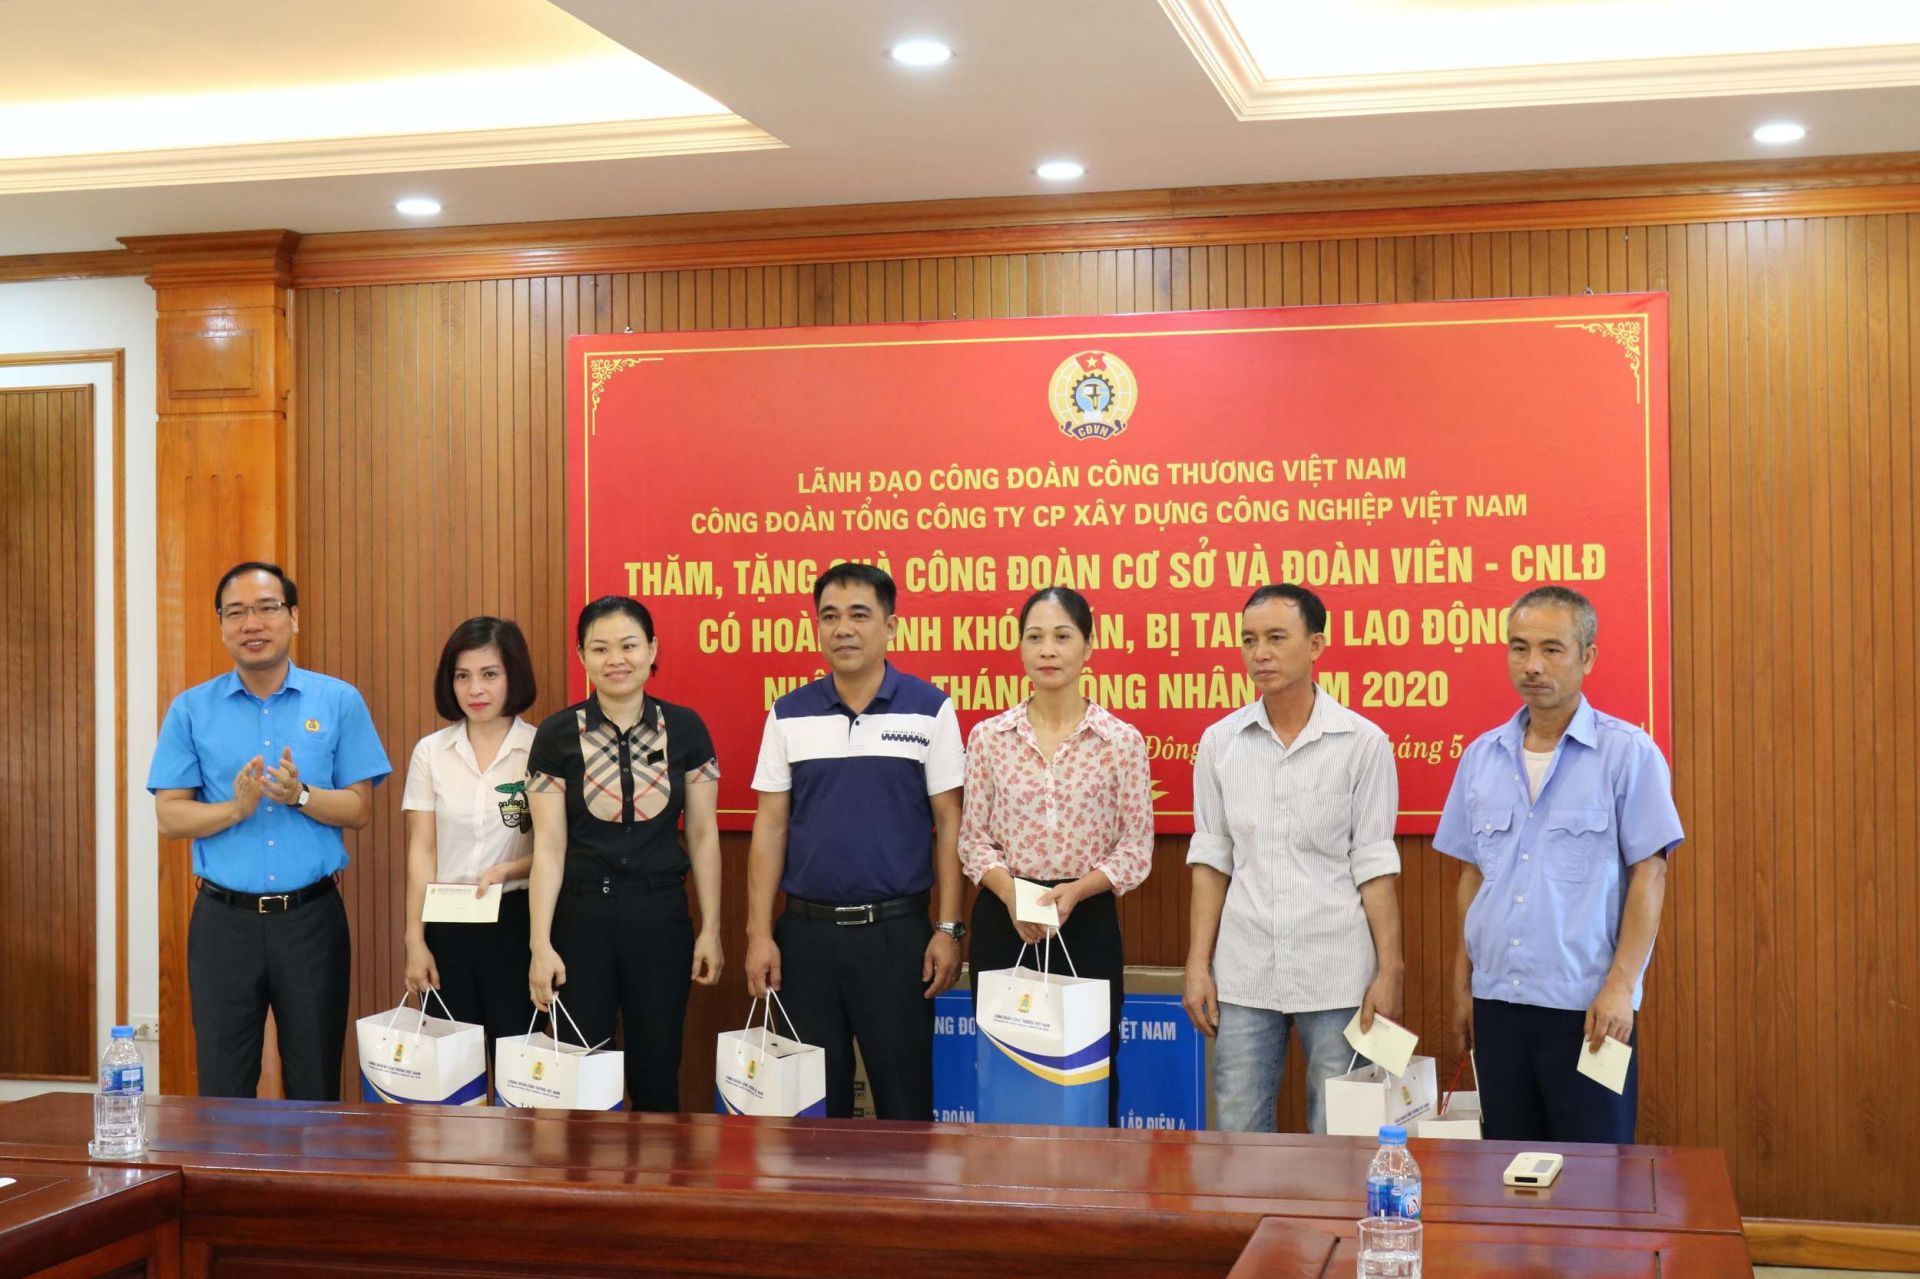 Chủ tịch CĐCTVN Trần Quang Huy tặng quà cho người lao động Xây lắp điện 4